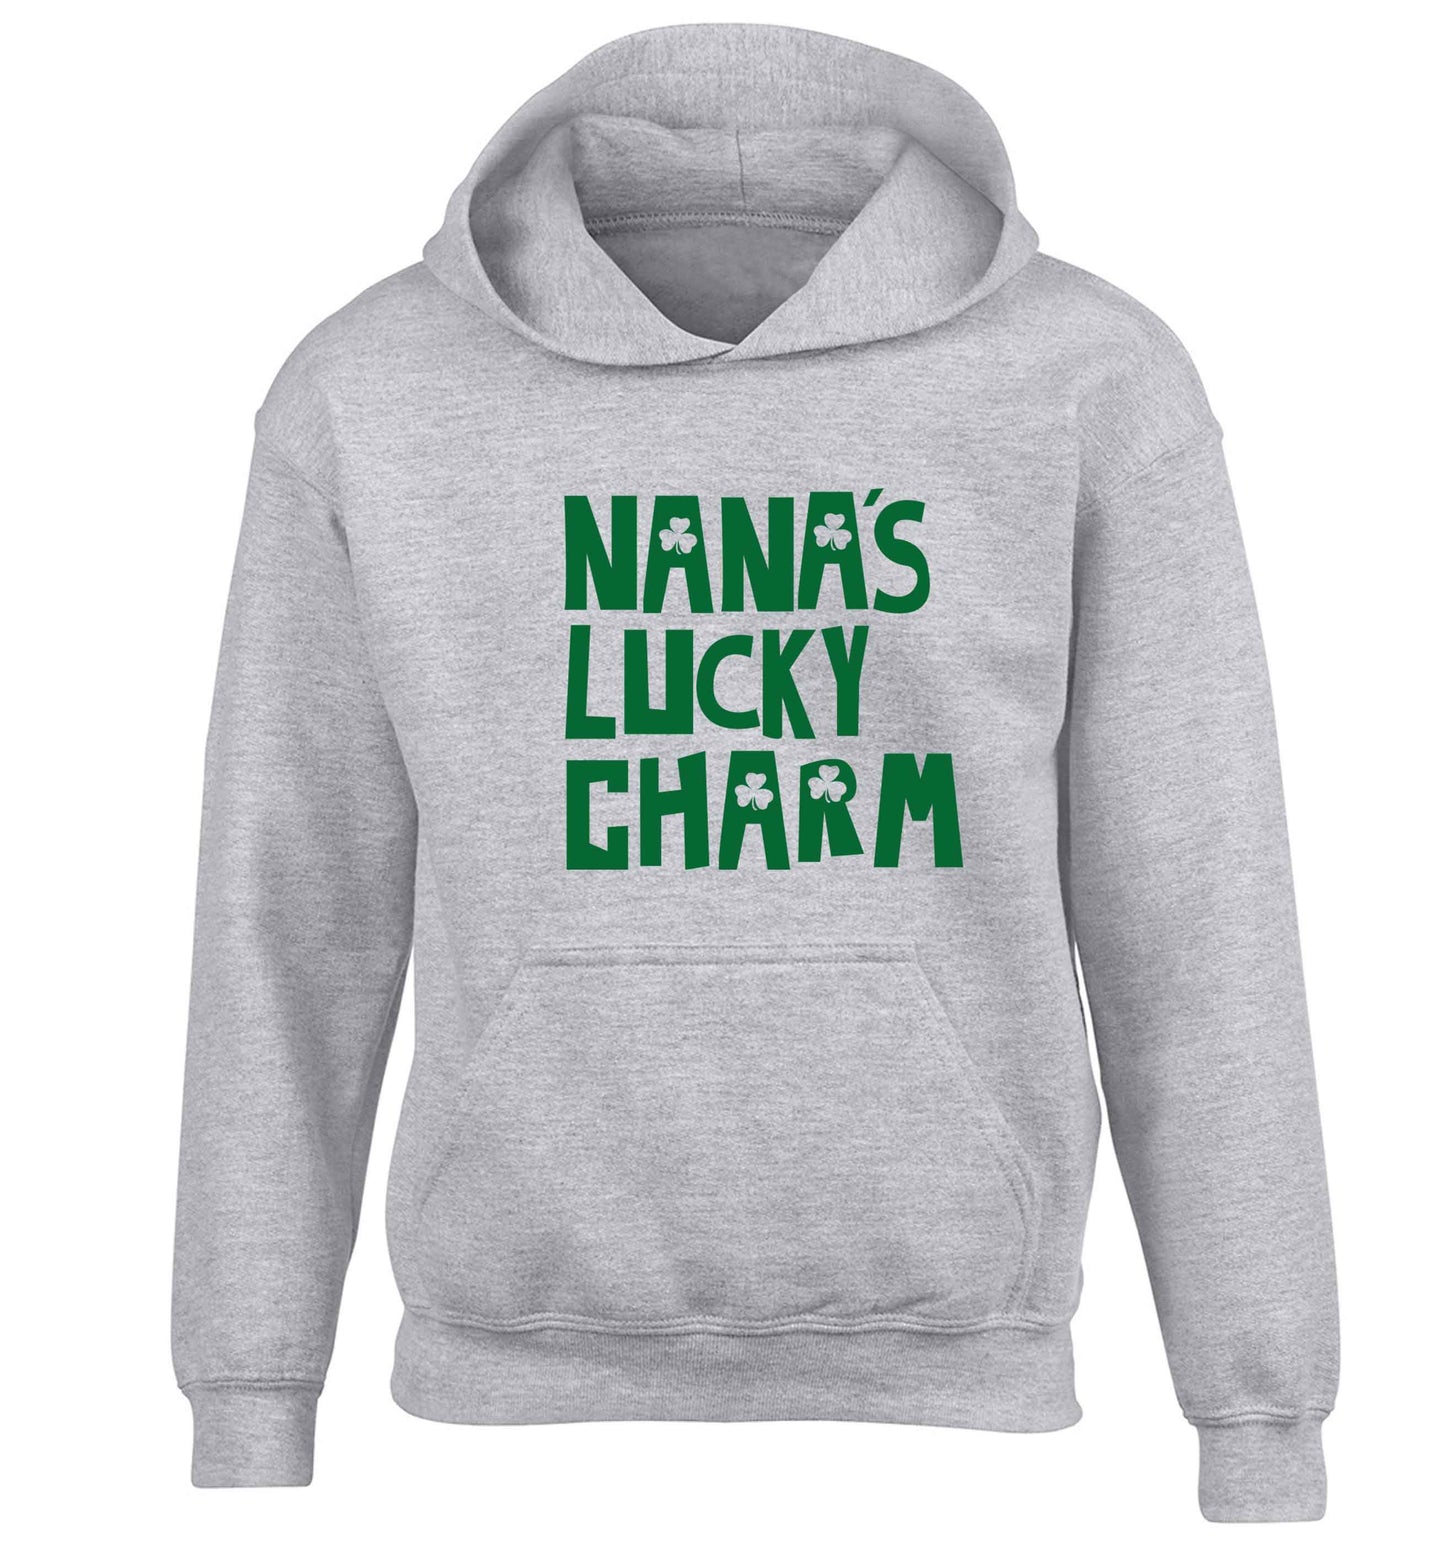 Nana's lucky charm children's grey hoodie 12-13 Years